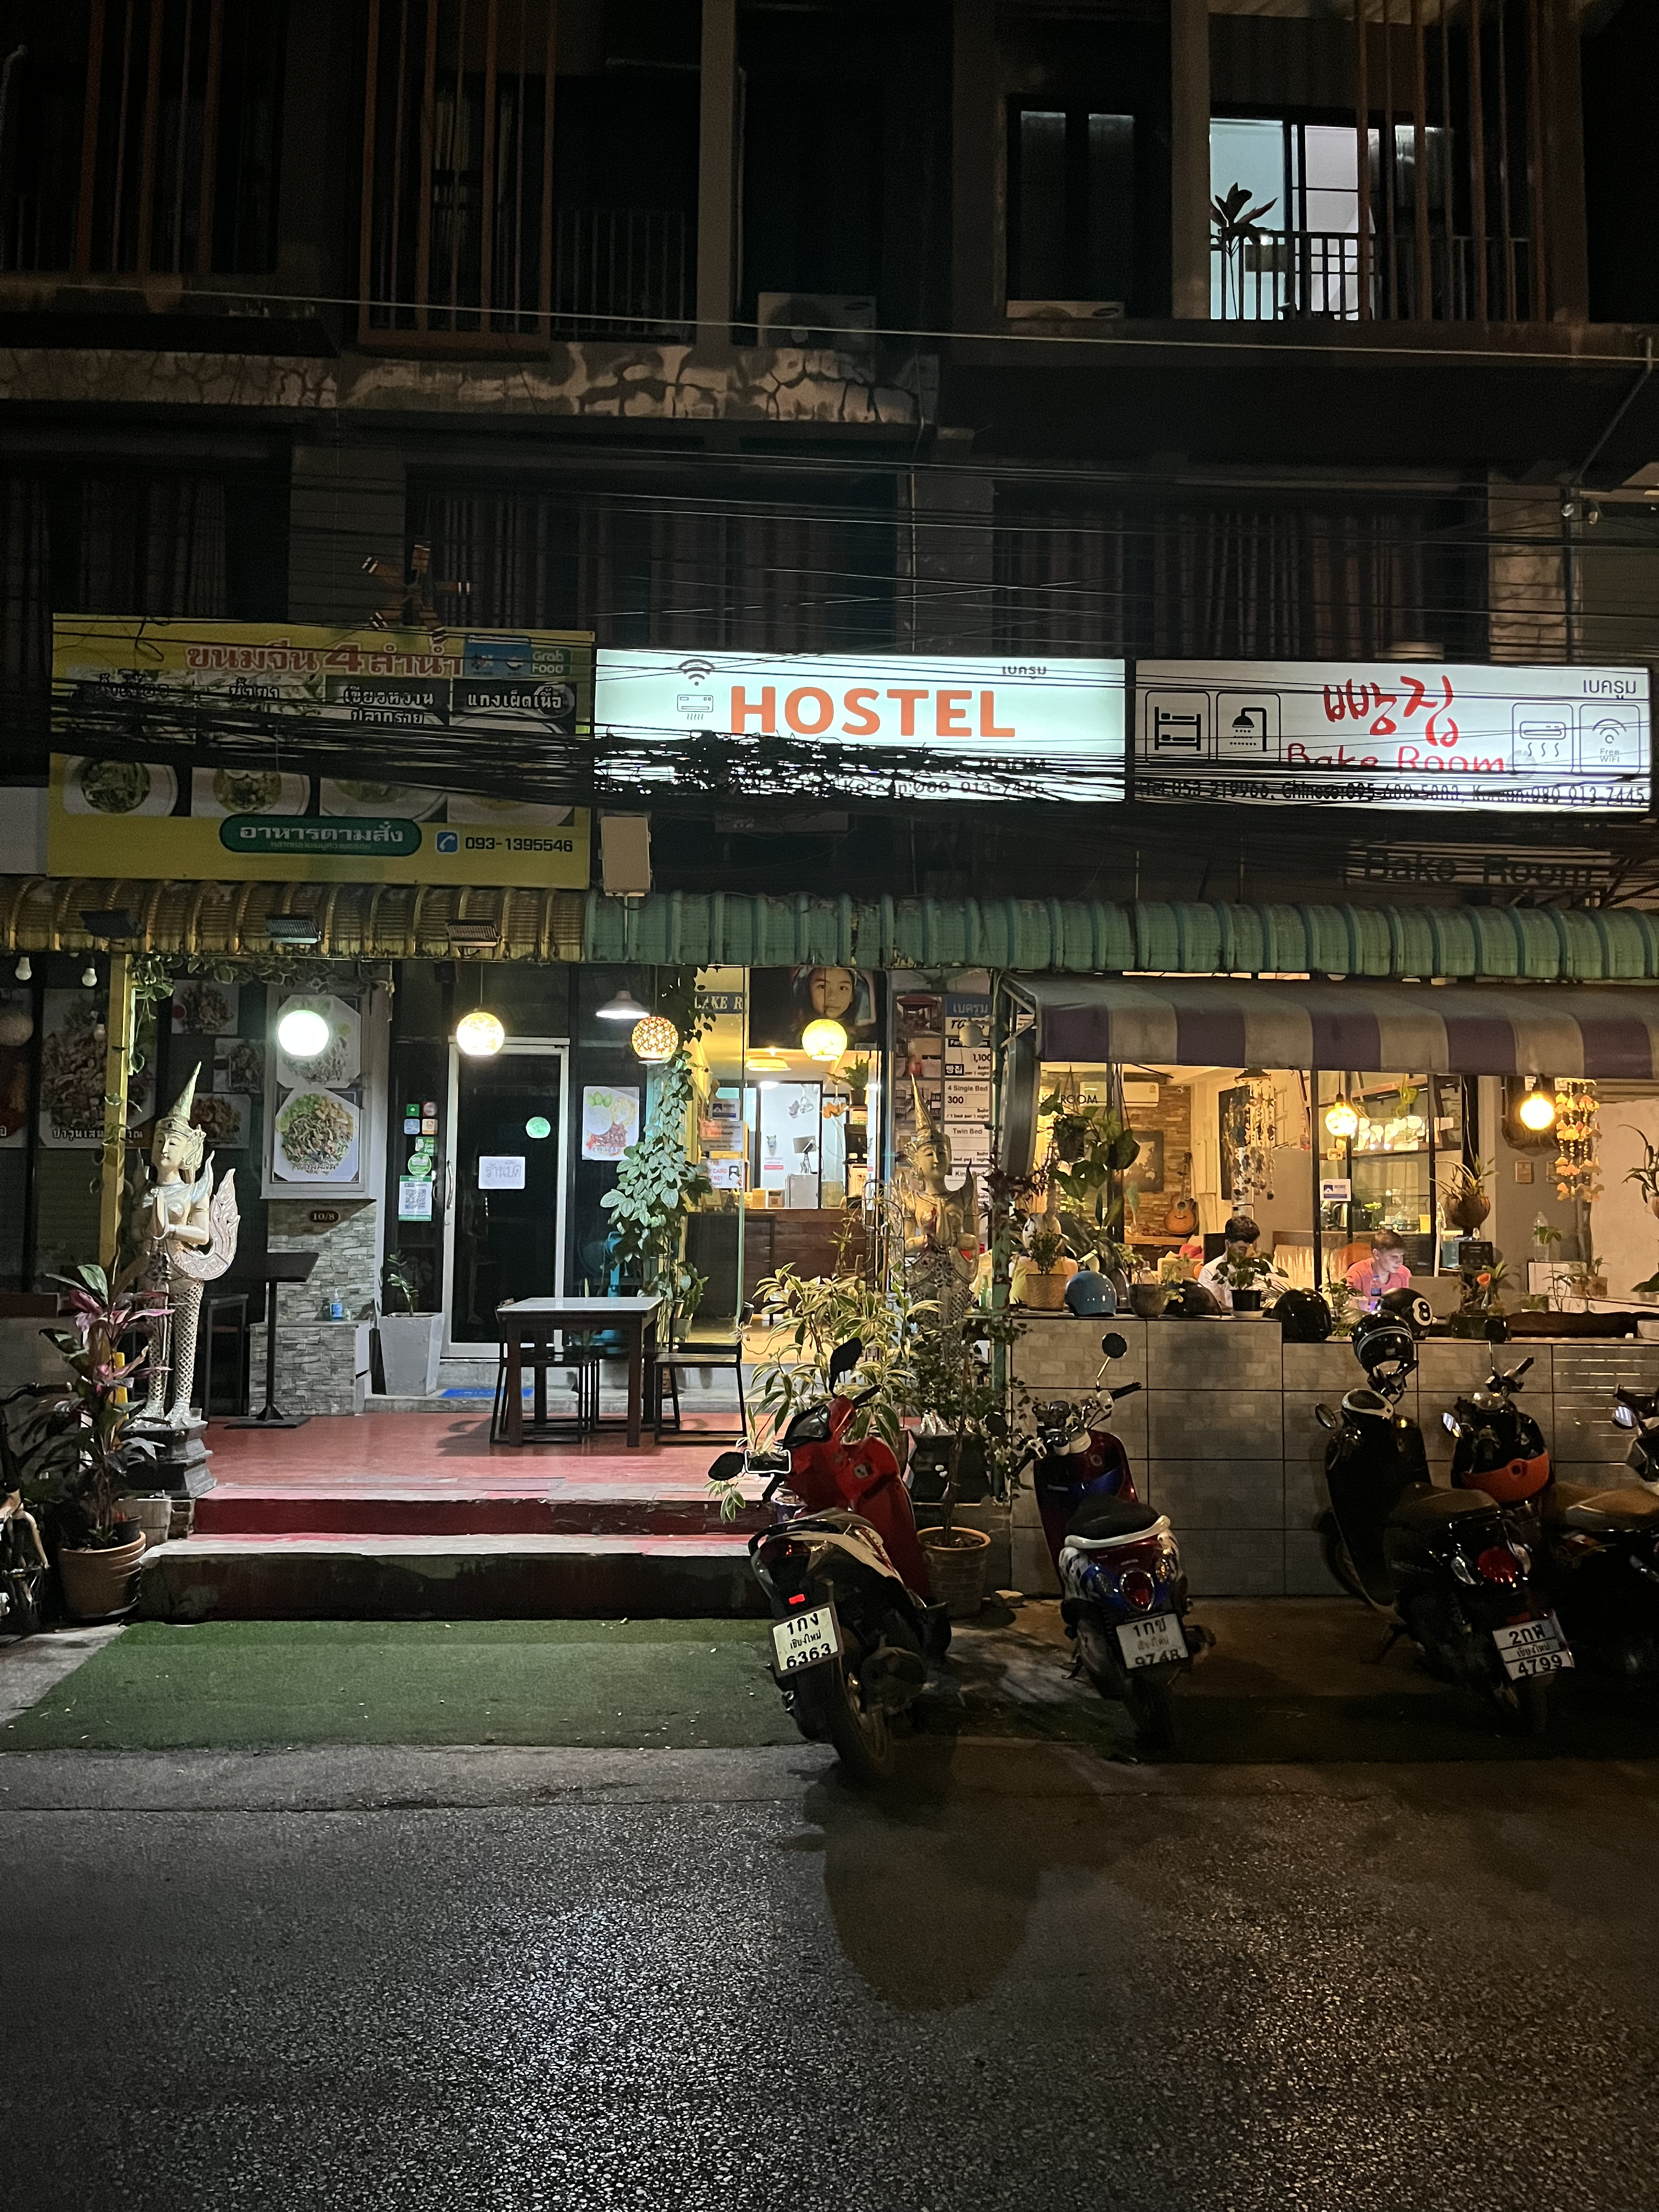 69 Ƶ/
Rachamankha Hotel chiangmai